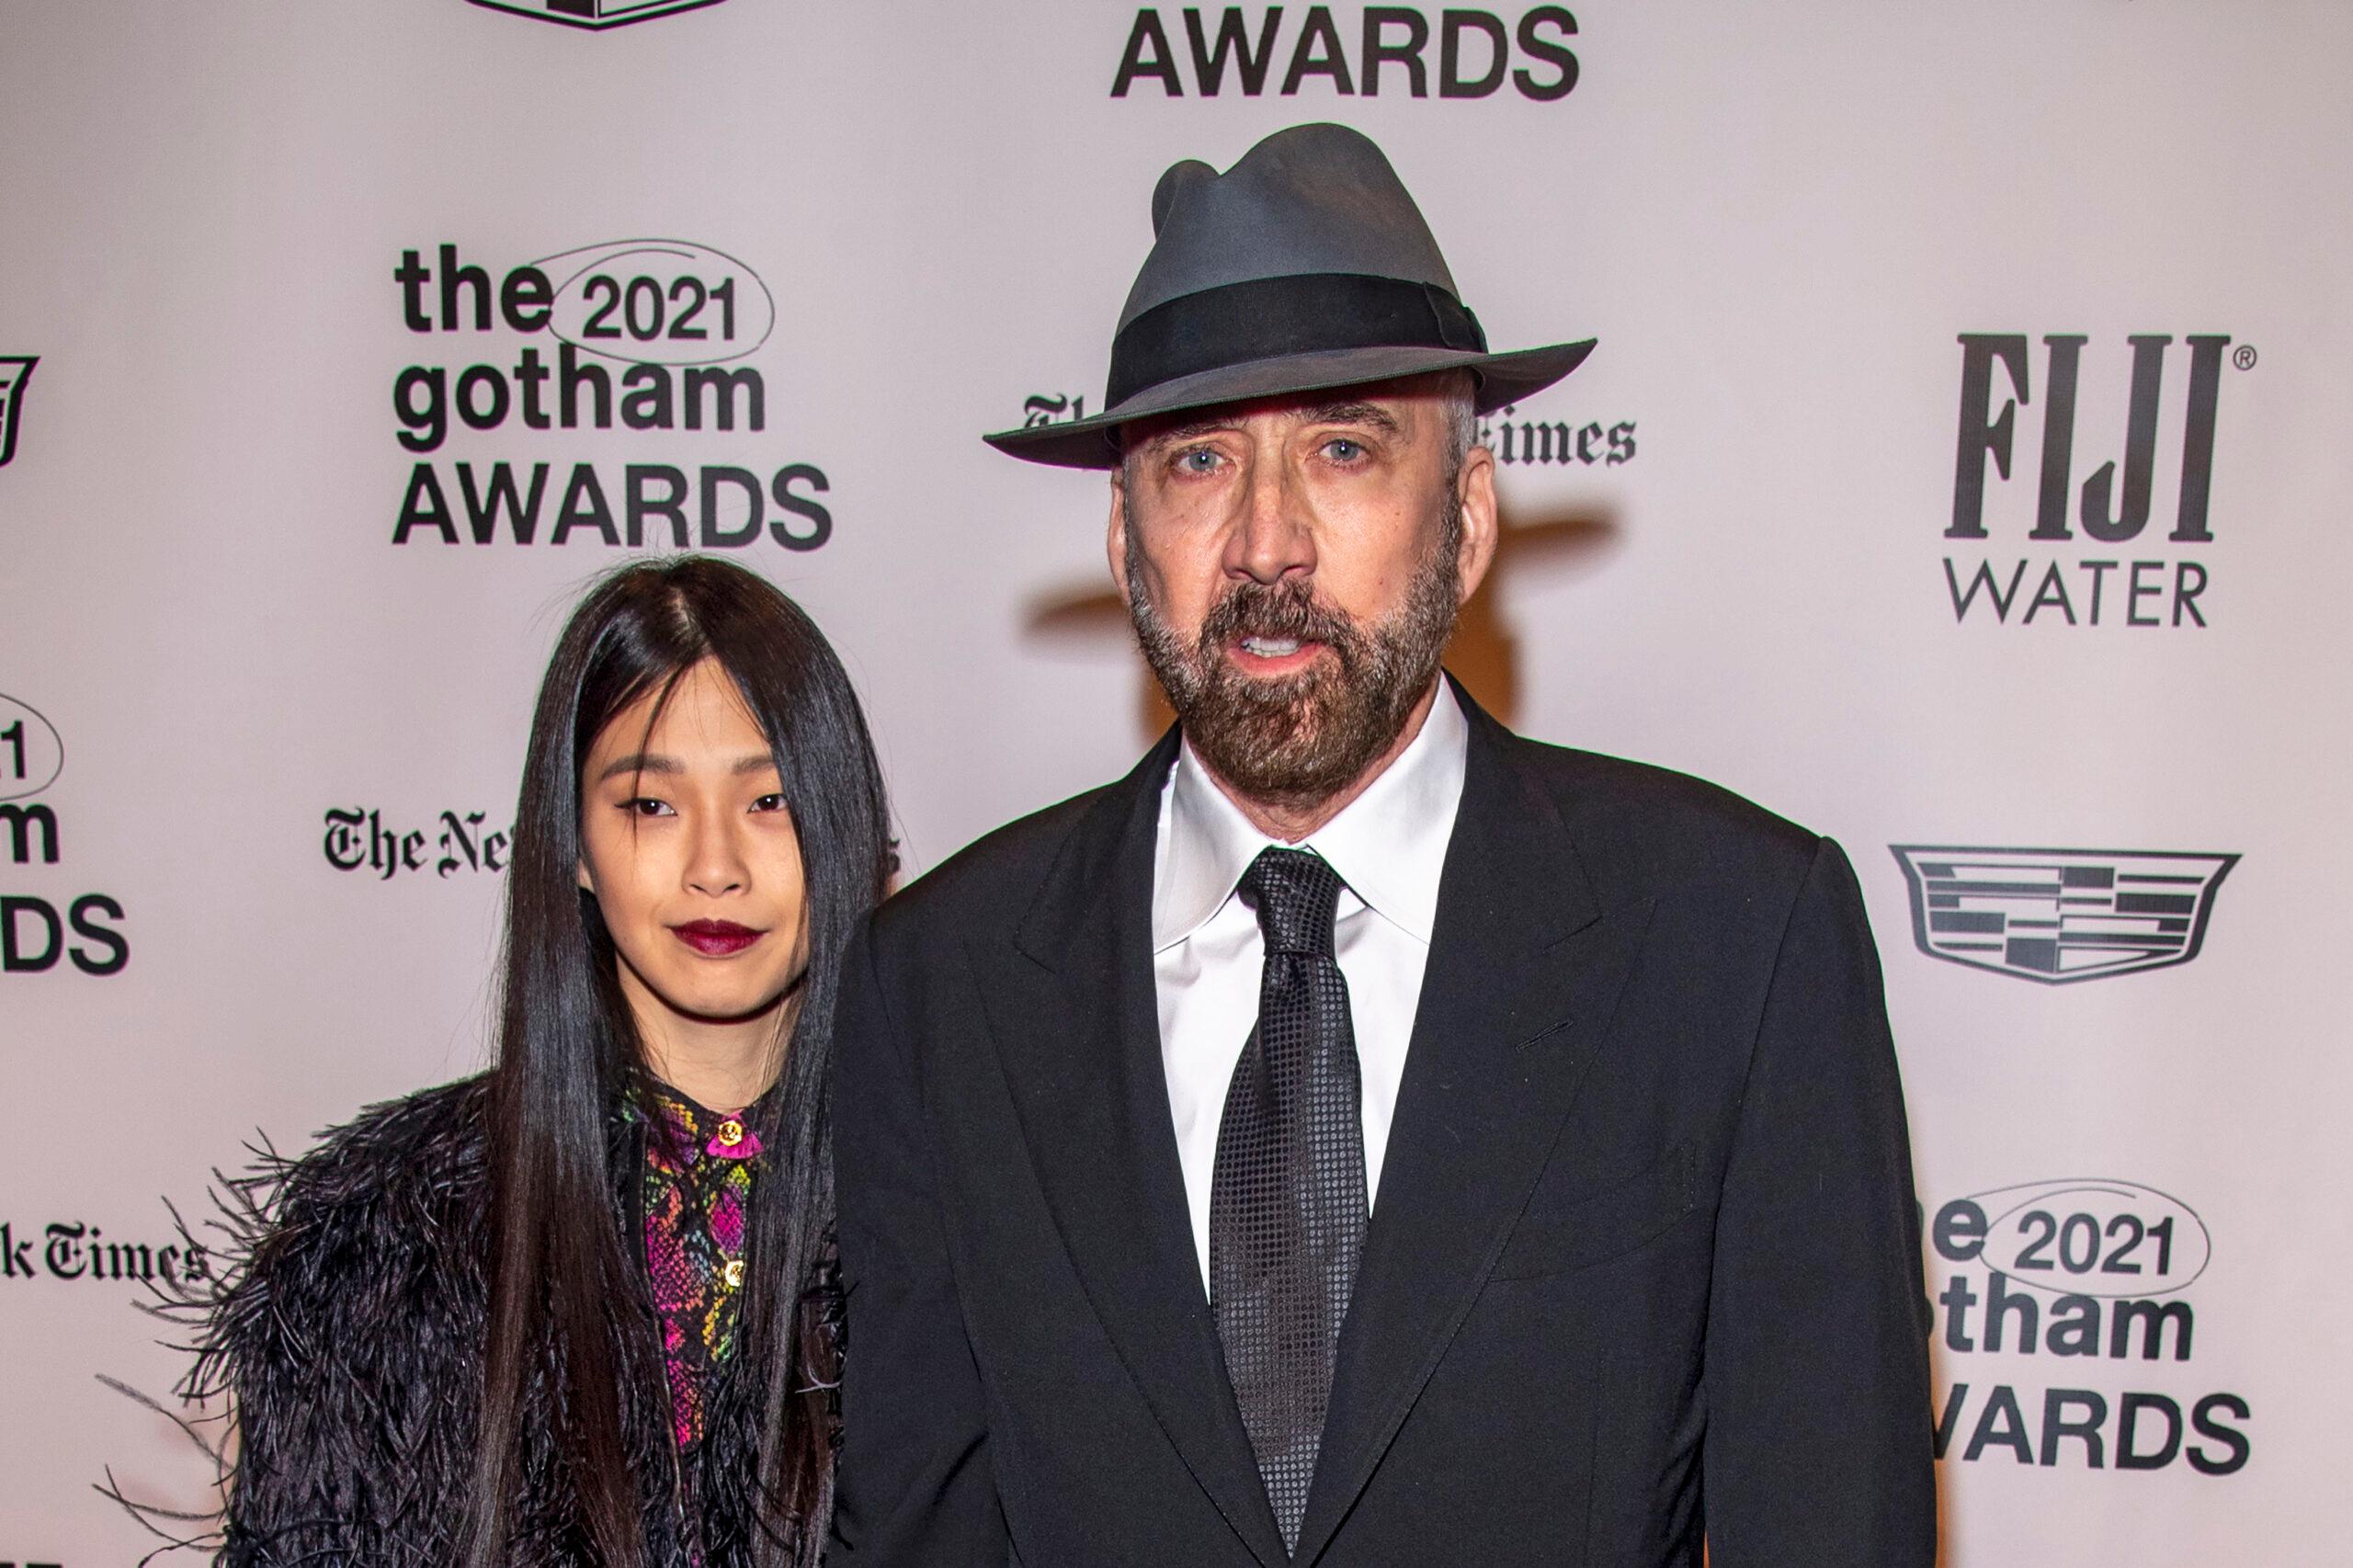 Nicholas Cage and wife Riko Shibata at 2021 Gotham Awards